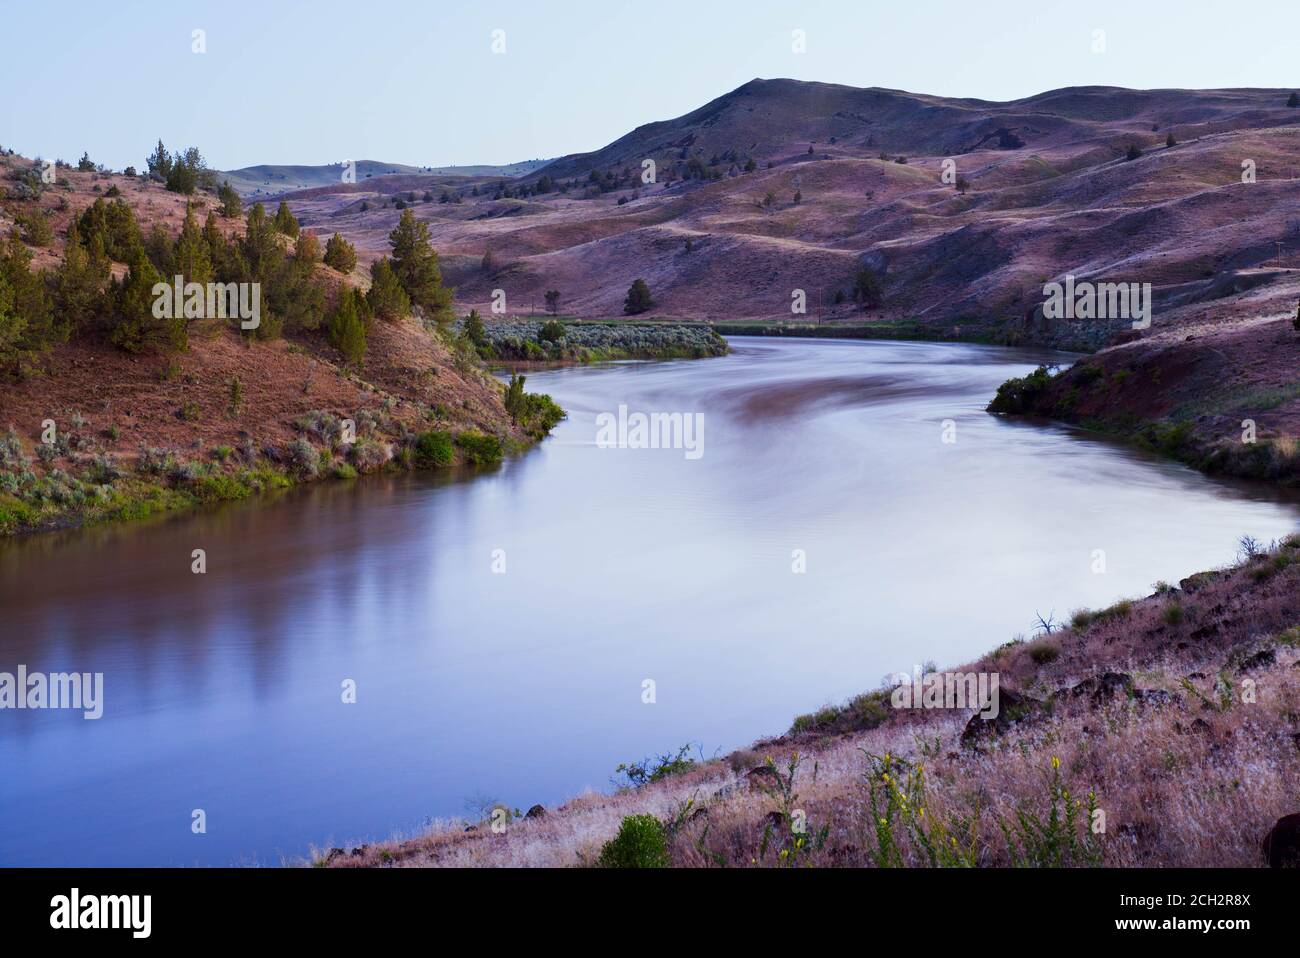 John Day River flowing through central Oregon desert, Oregon, USA Stock Photo